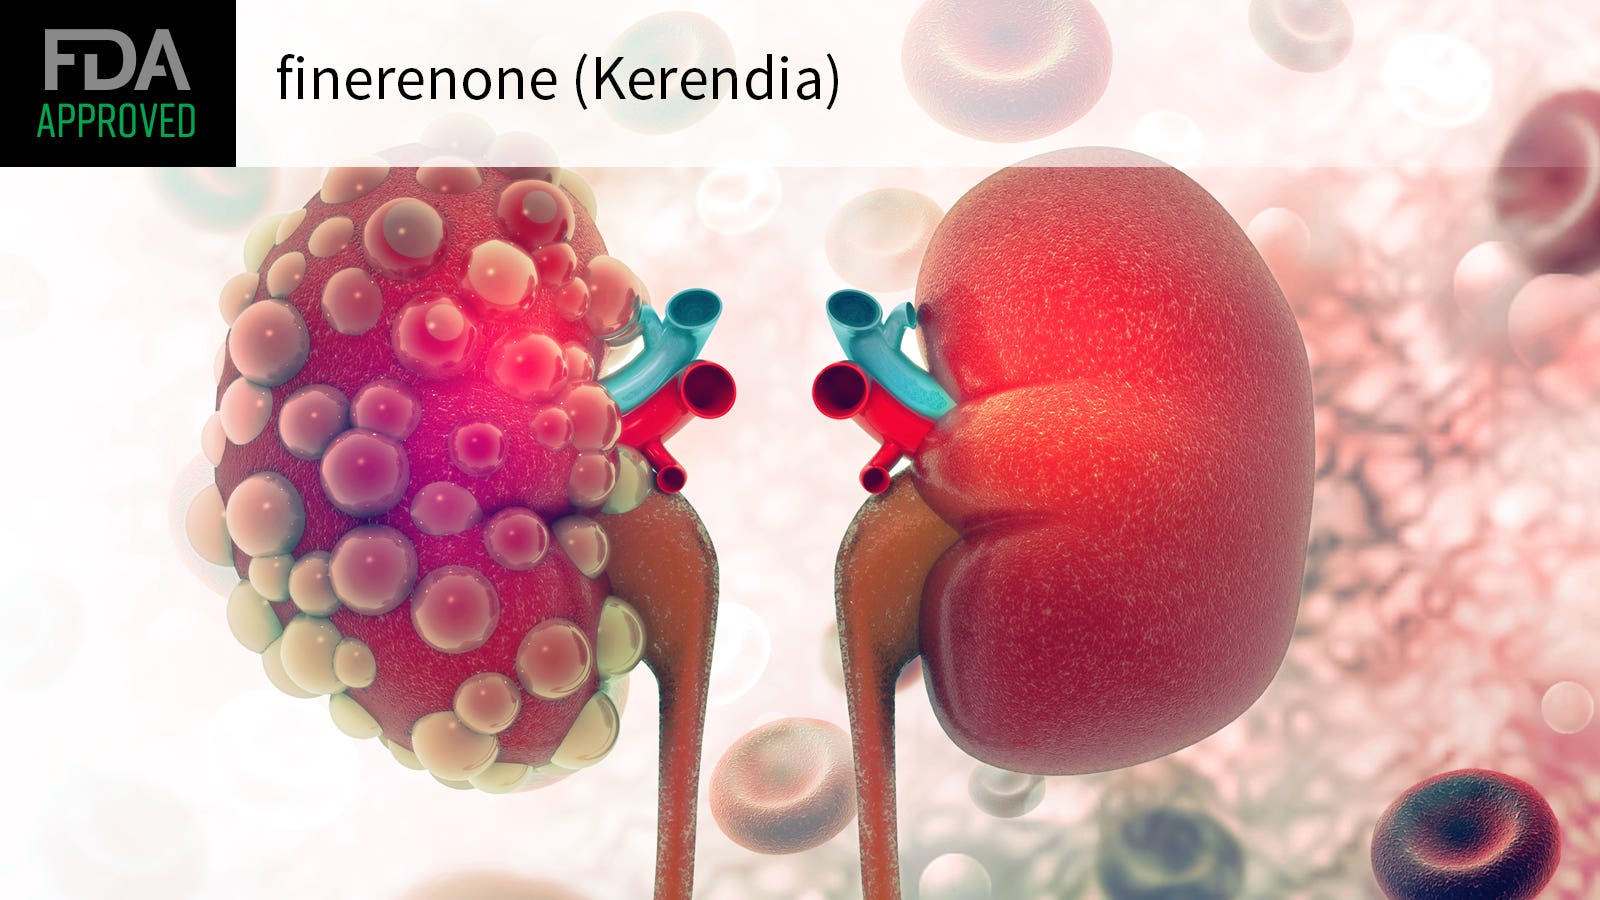 加拿大批准KERENDIA (Finerenone)作为糖尿病肾病成人标准护理治疗的辅助药物